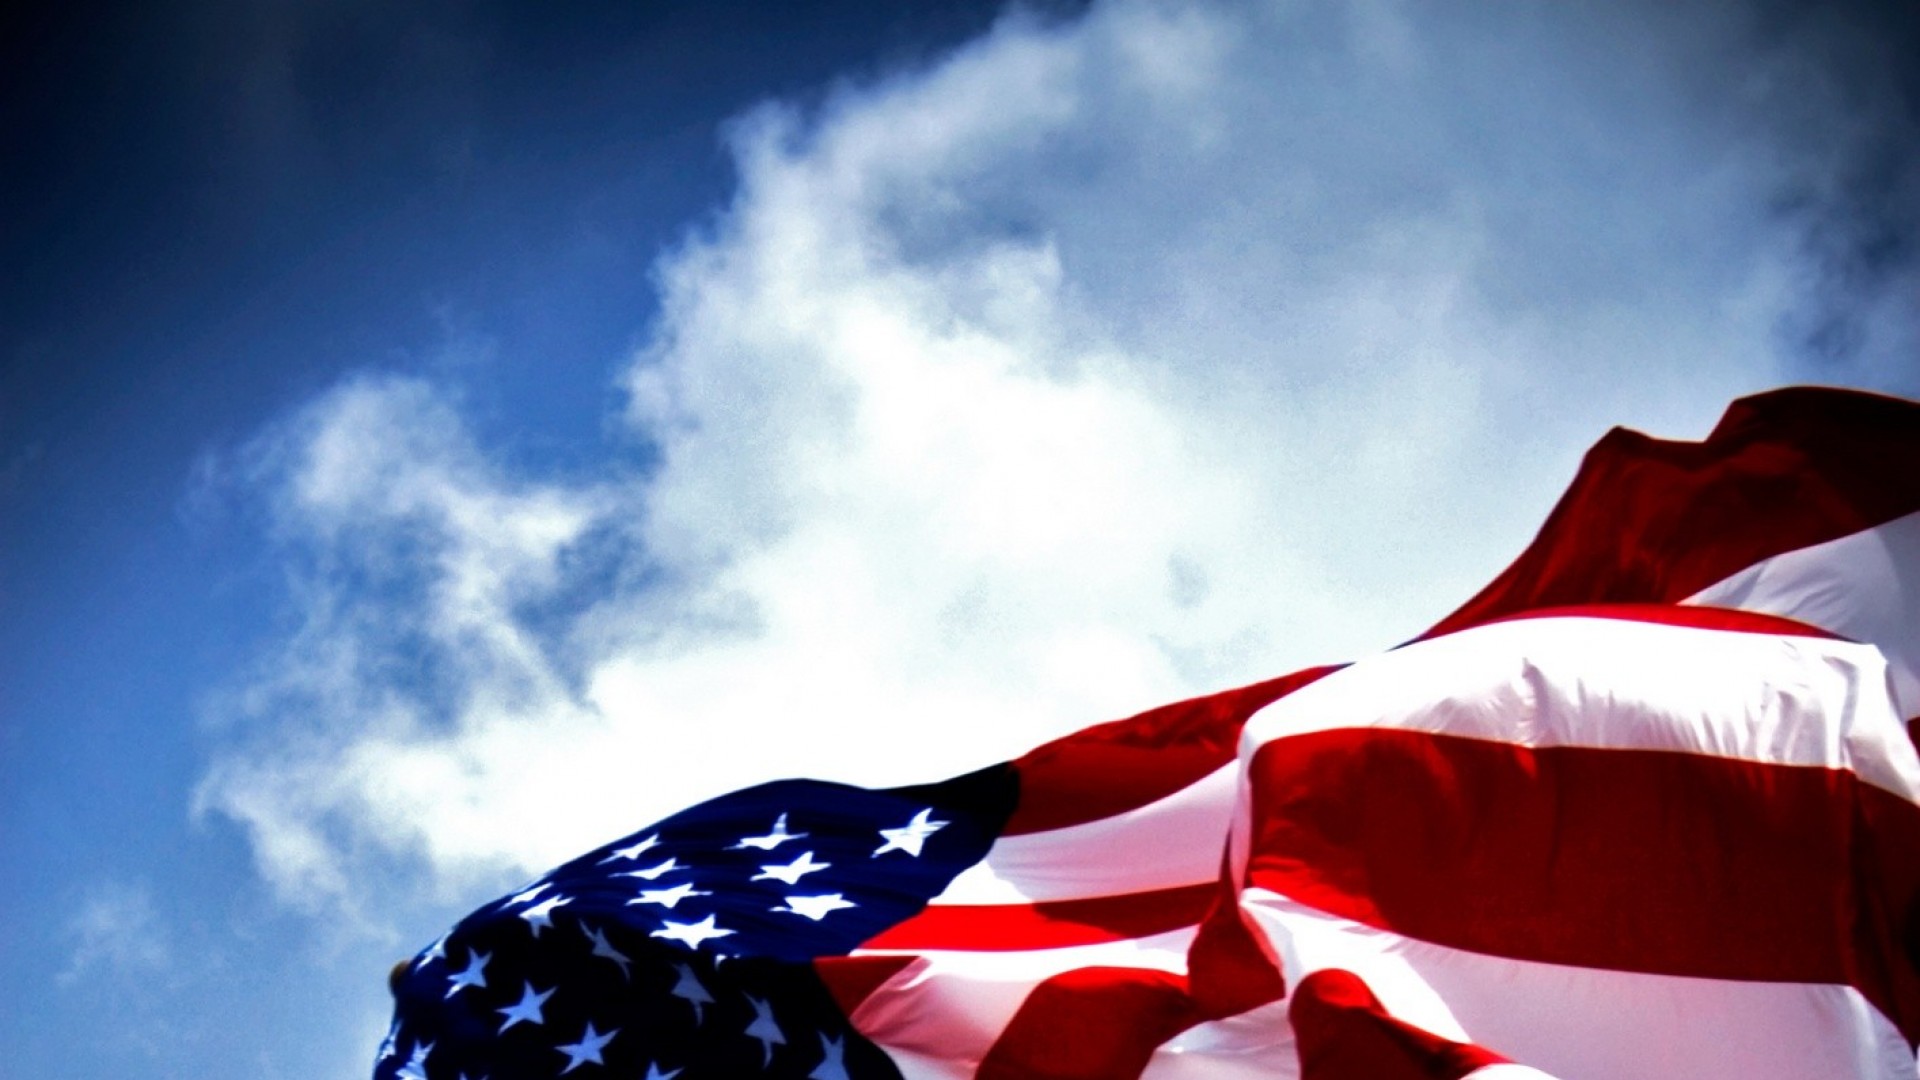 amerikanische tapeten hd,flagge,himmel,blau,wolke,rot